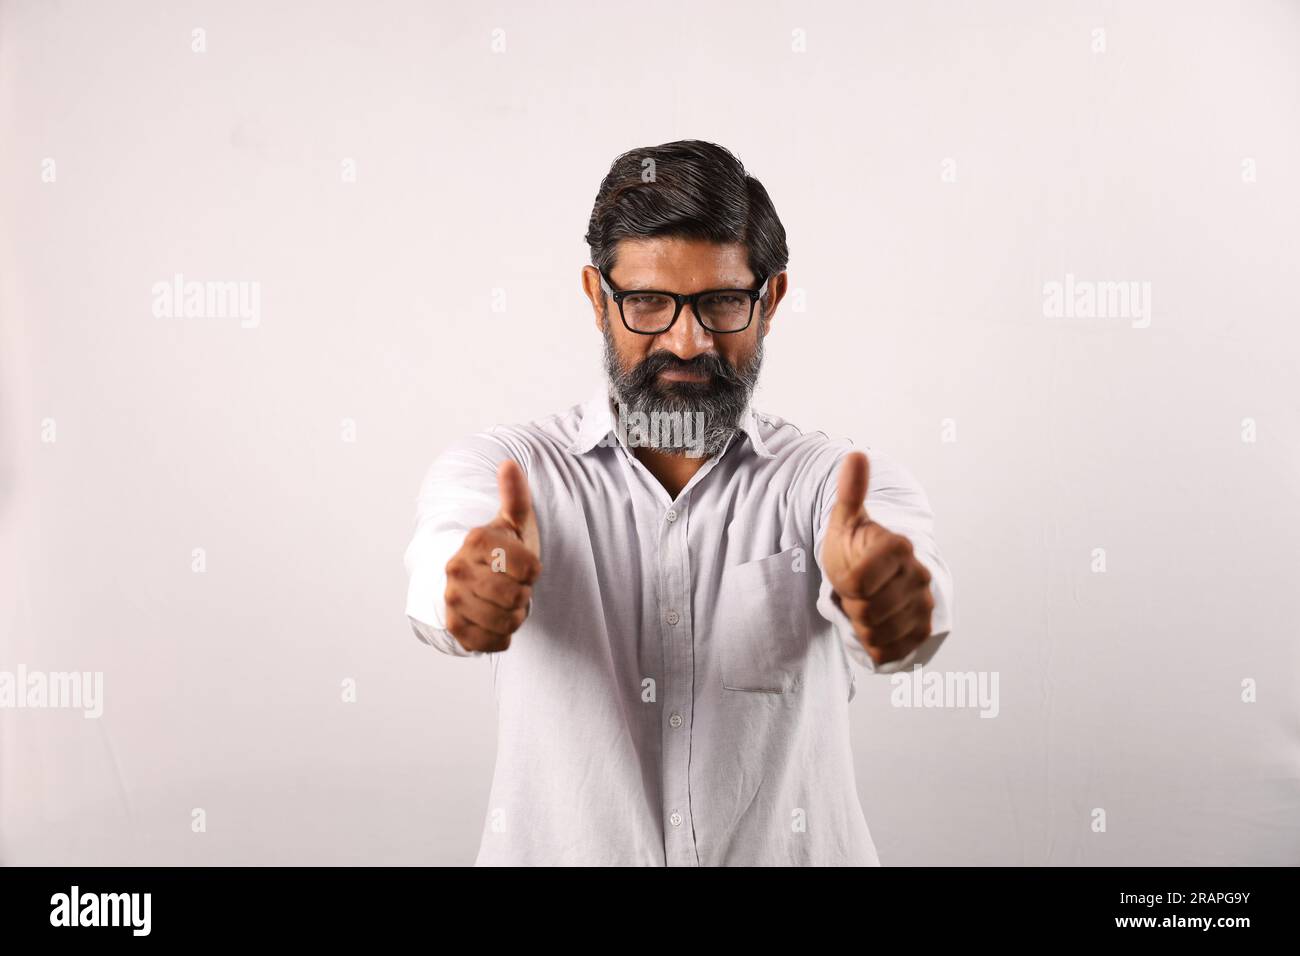 Ritratto di un uomo barbuto indiano che indossa una camicia. Espressioni funky senso di realizzazione e realizzazione. Pollice in alto. Strategia vincente. Foto Stock